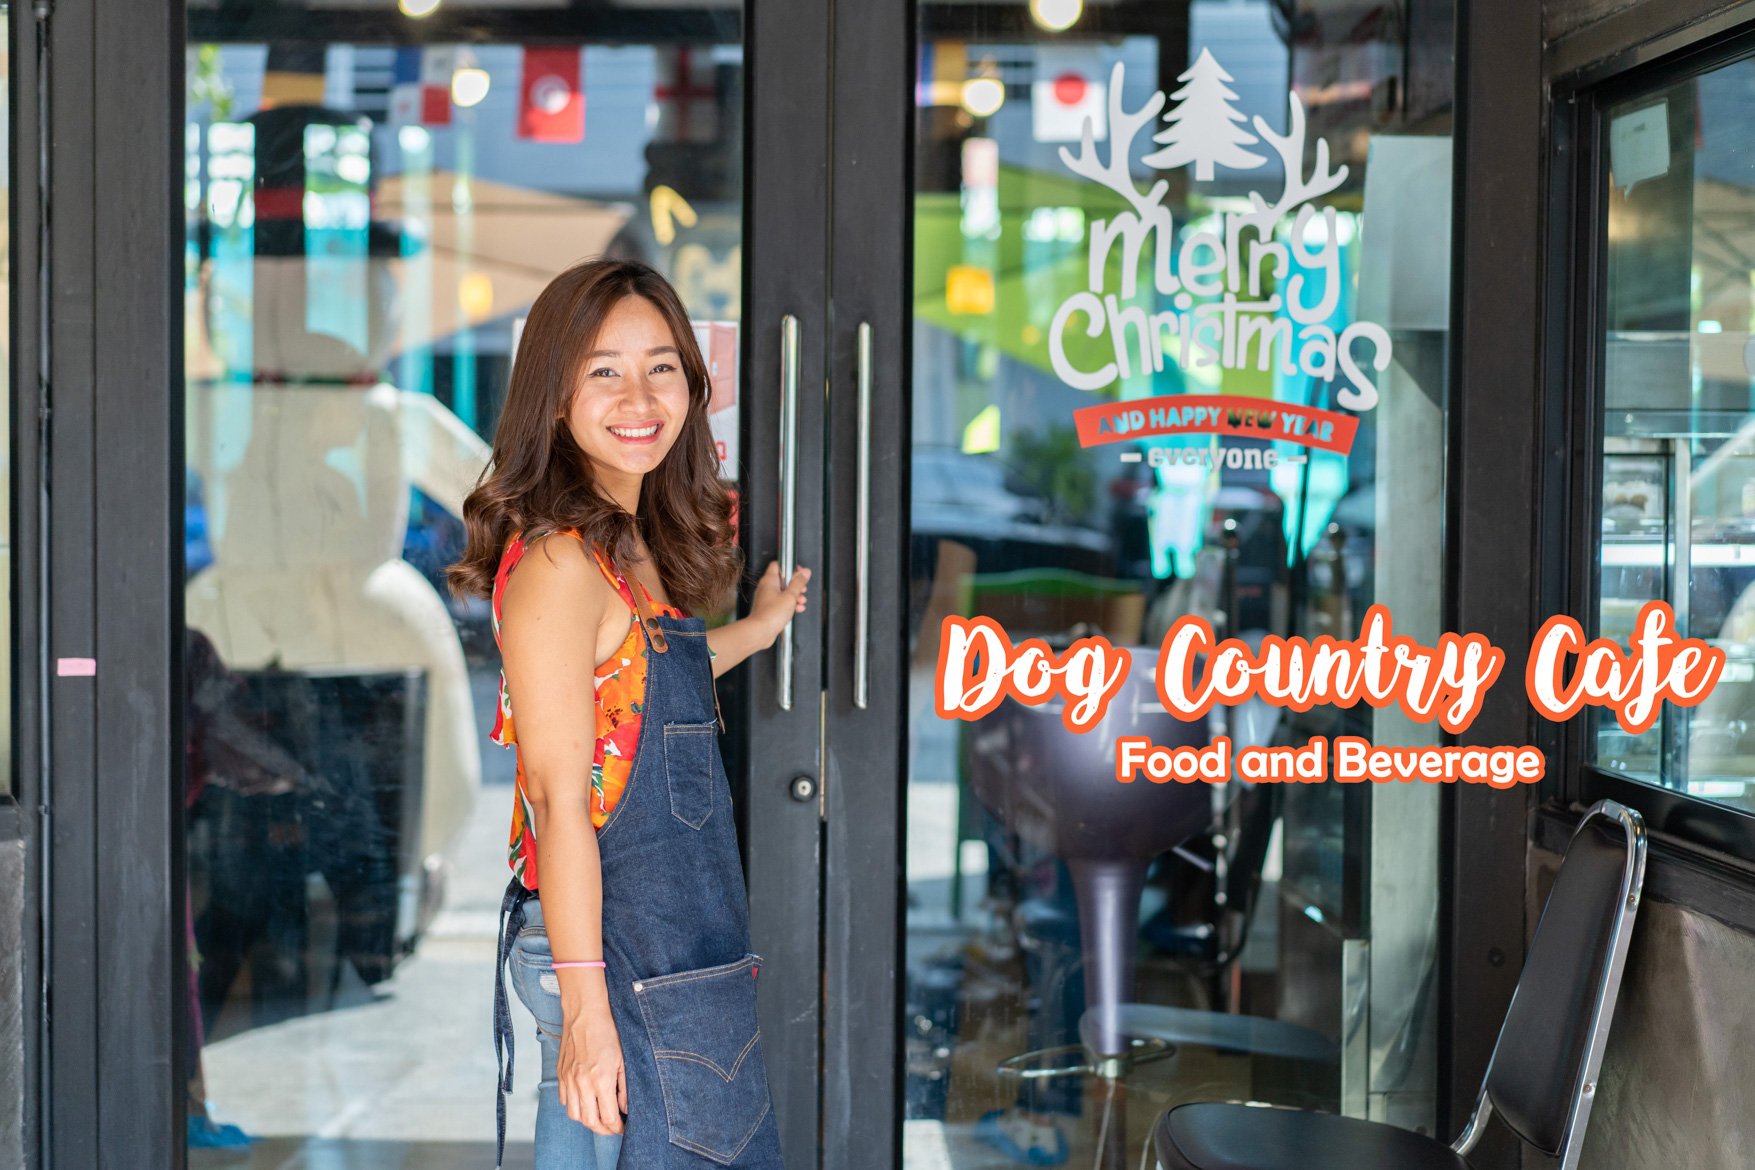 Dog Country  Cafe' คาเฟ่น้องหมาที่มีมากกว่า 200 ตัว 30 สายพันธ์ุ เล่นได้ไม่จำกัดเวลา ฟินหนักมาก